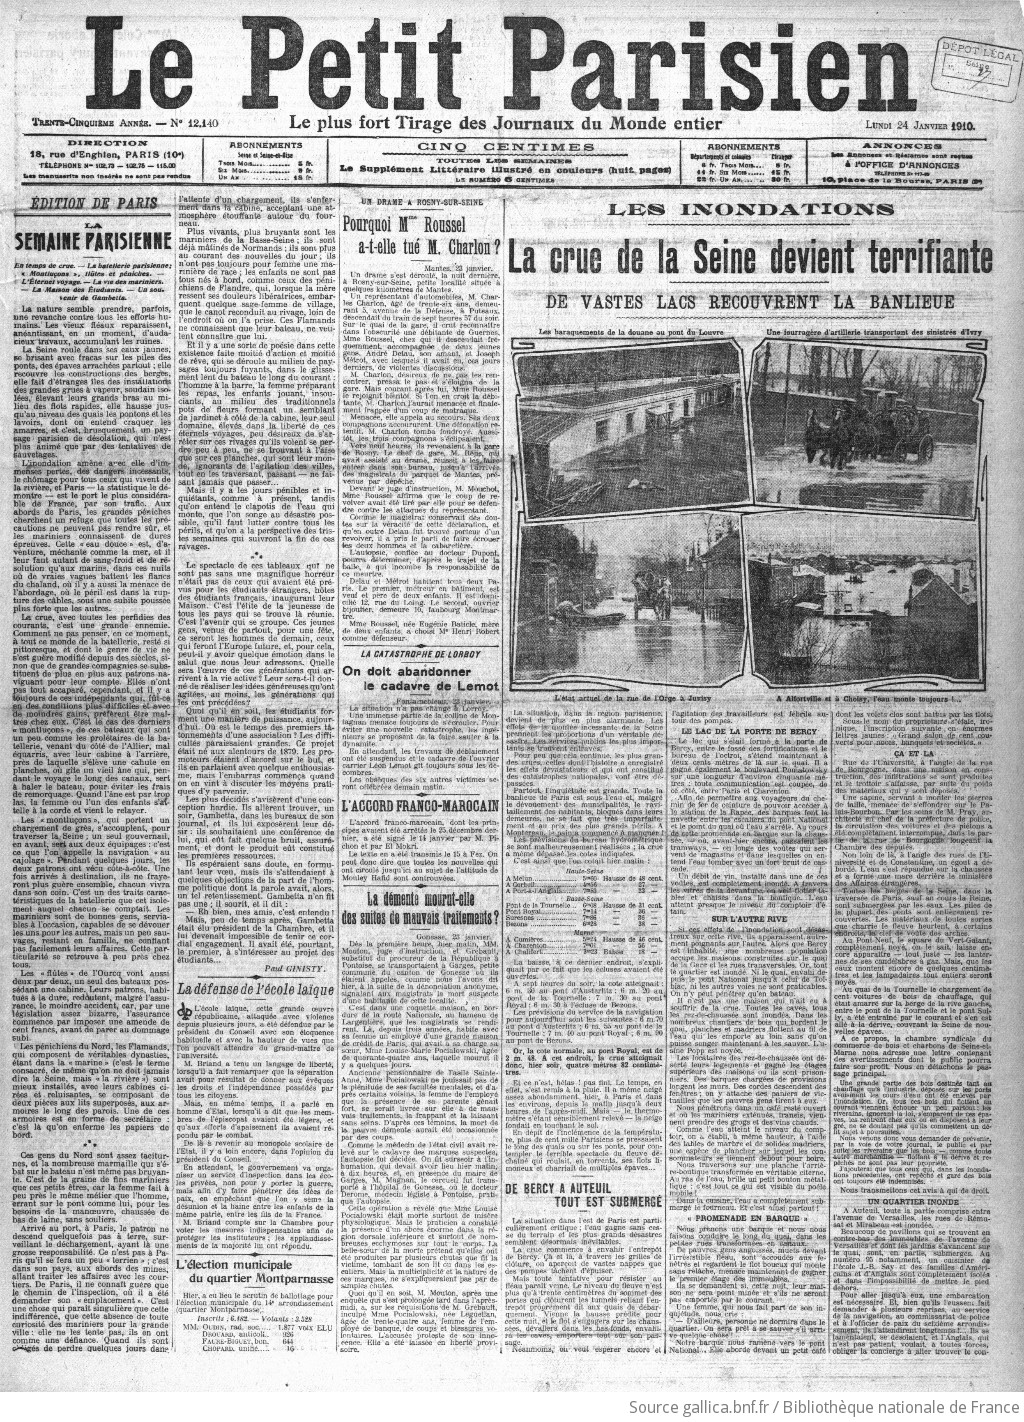 Le Petit Parisien : journal quotidien du soir | 1910-01-24 | Gallica